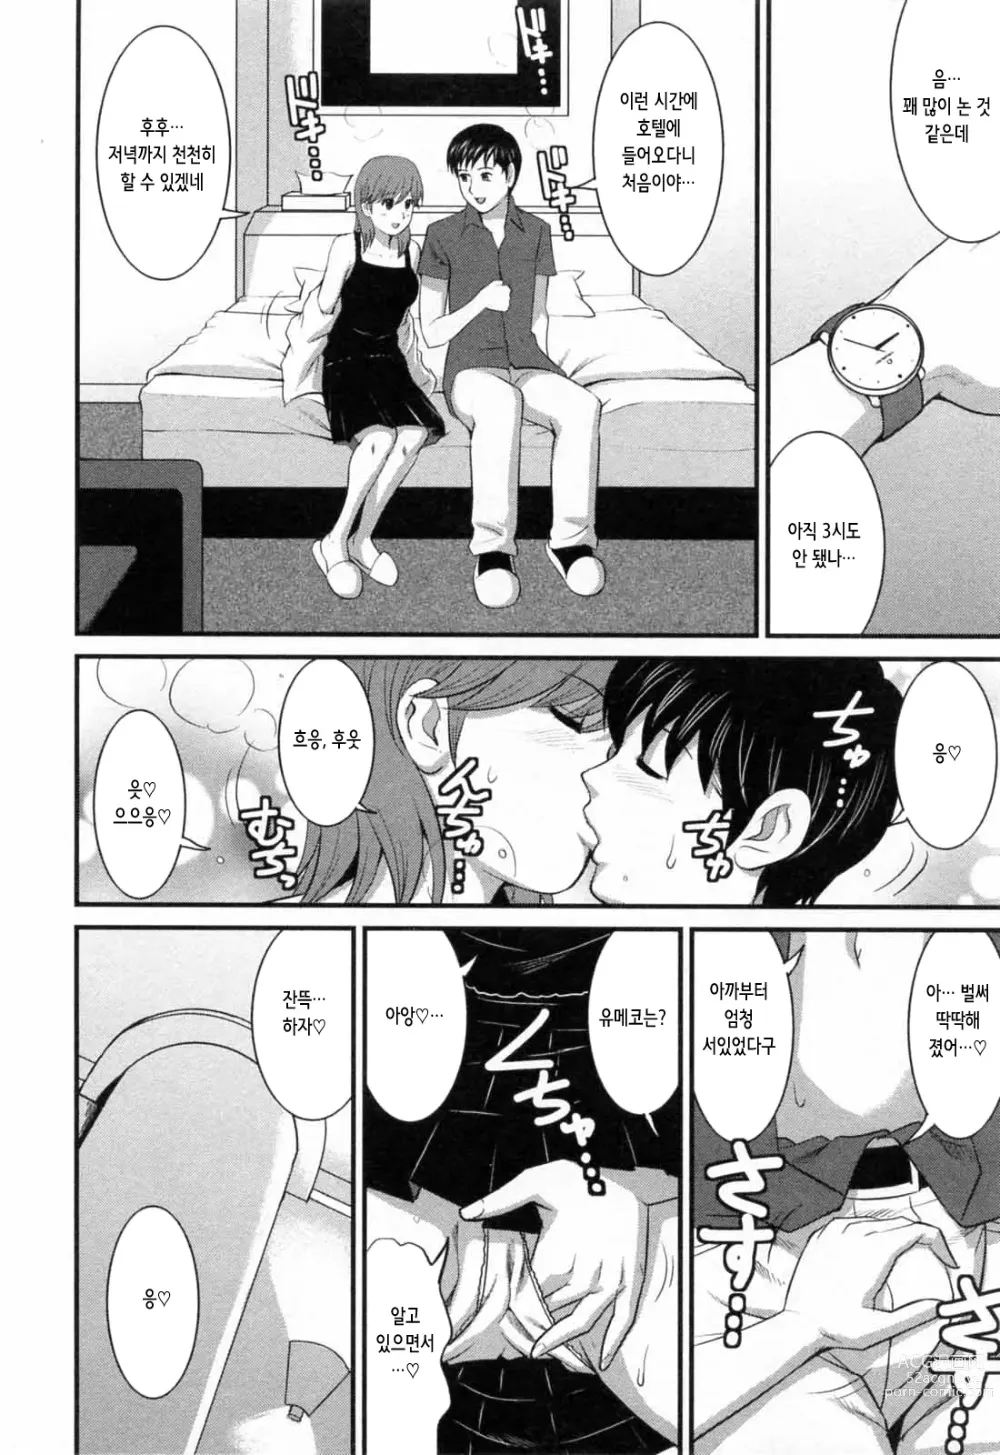 Page 197 of manga 파견사원 무우코 씨 2